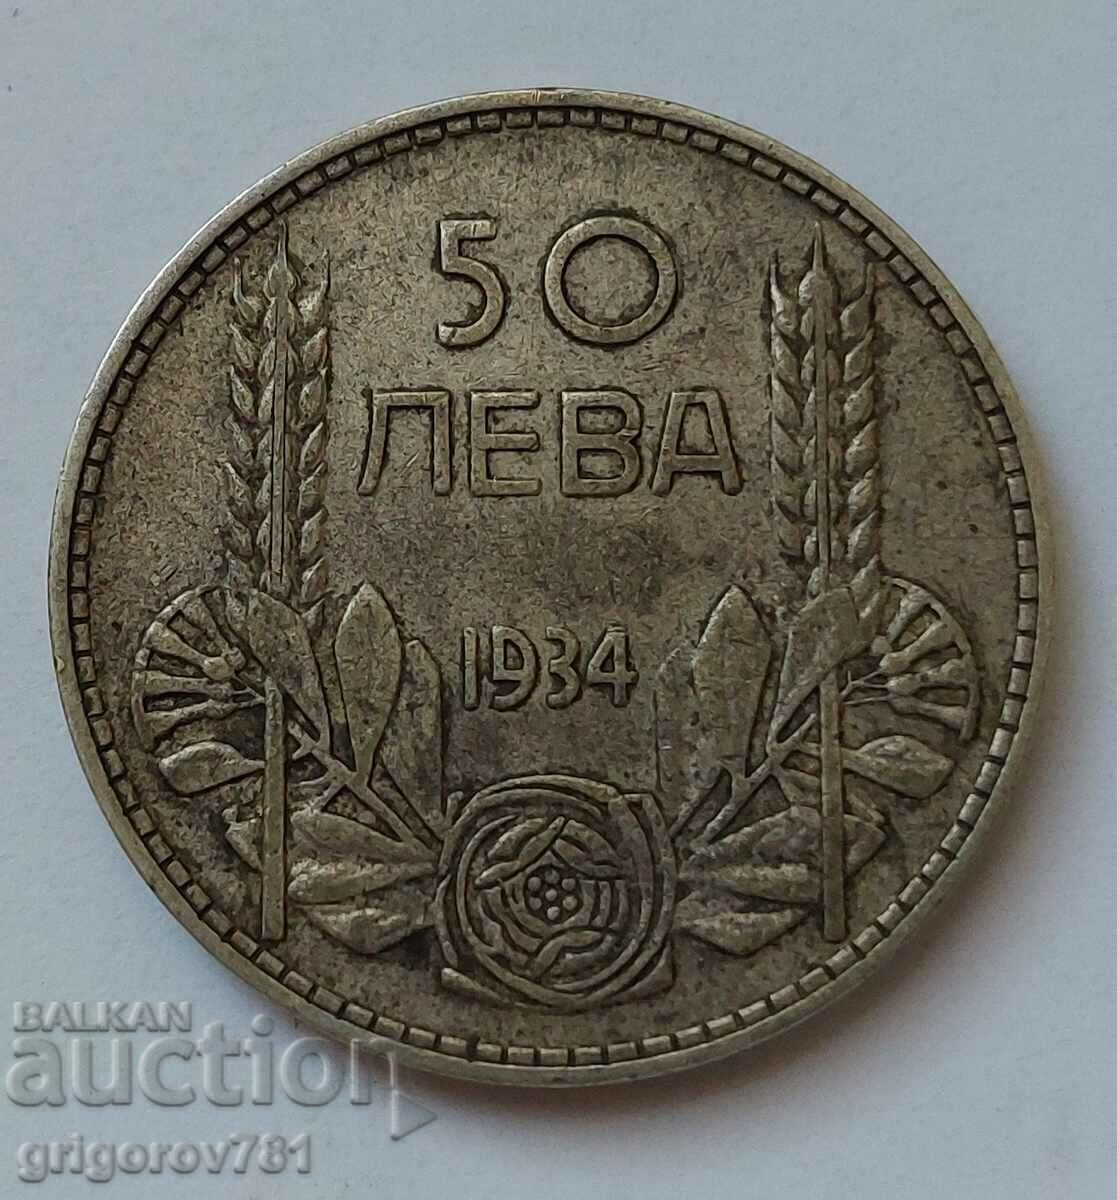 Ασήμι 50 λέβα Βουλγαρία 1934 - ασημένιο νόμισμα #10